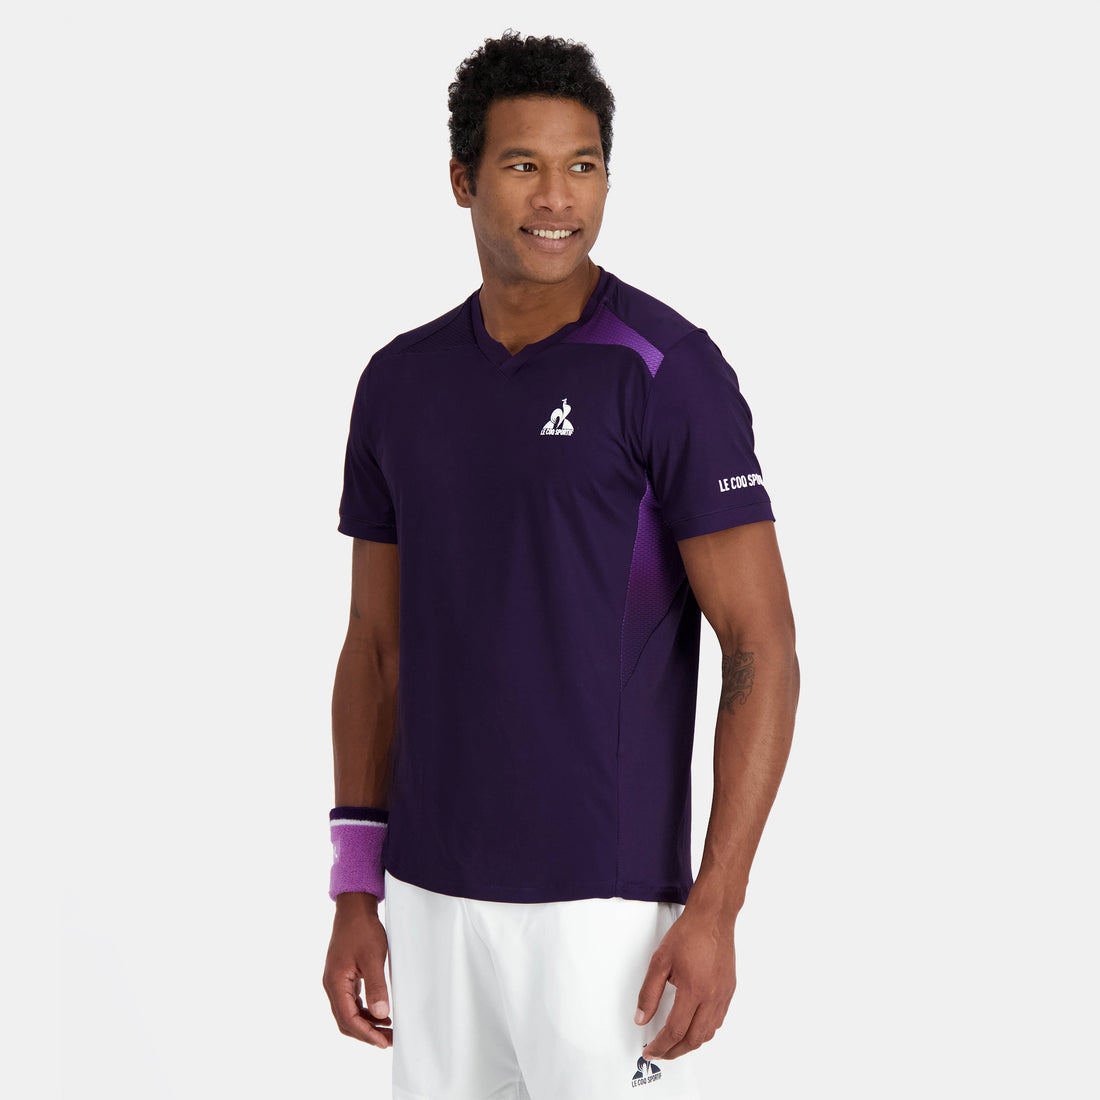 2410516-TENNIS PRO Tee SS 24 N°1 M purple velvet  | T-Shirt for men